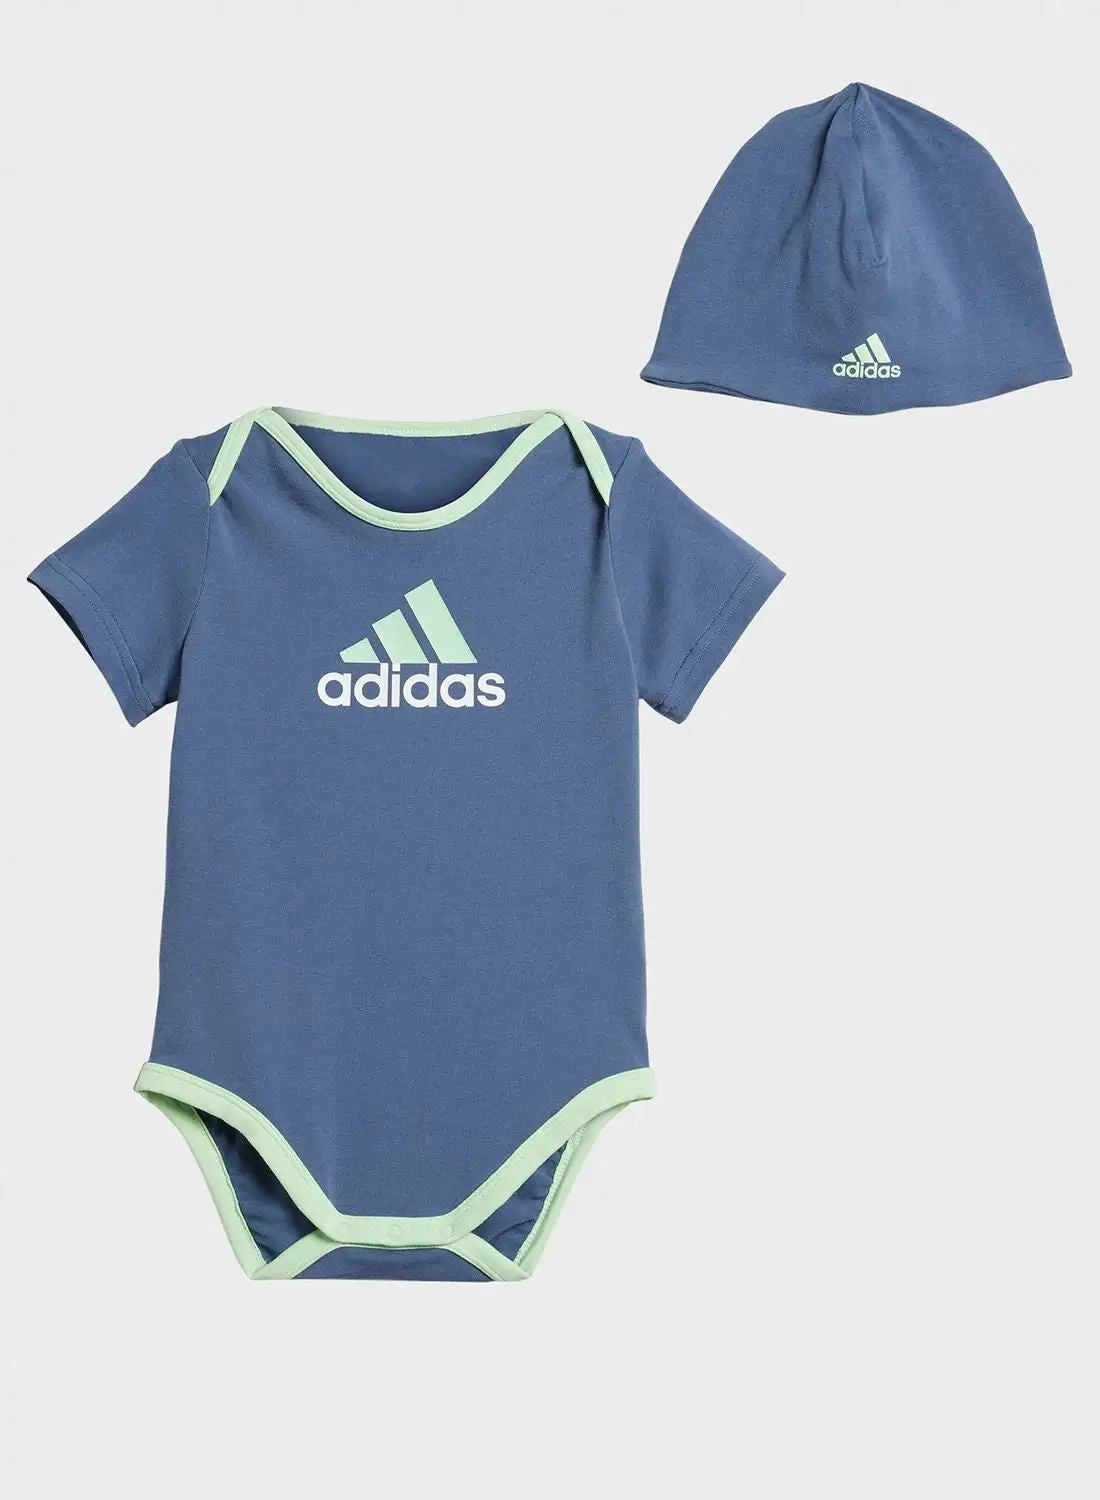 Adidas Infant Gift Set